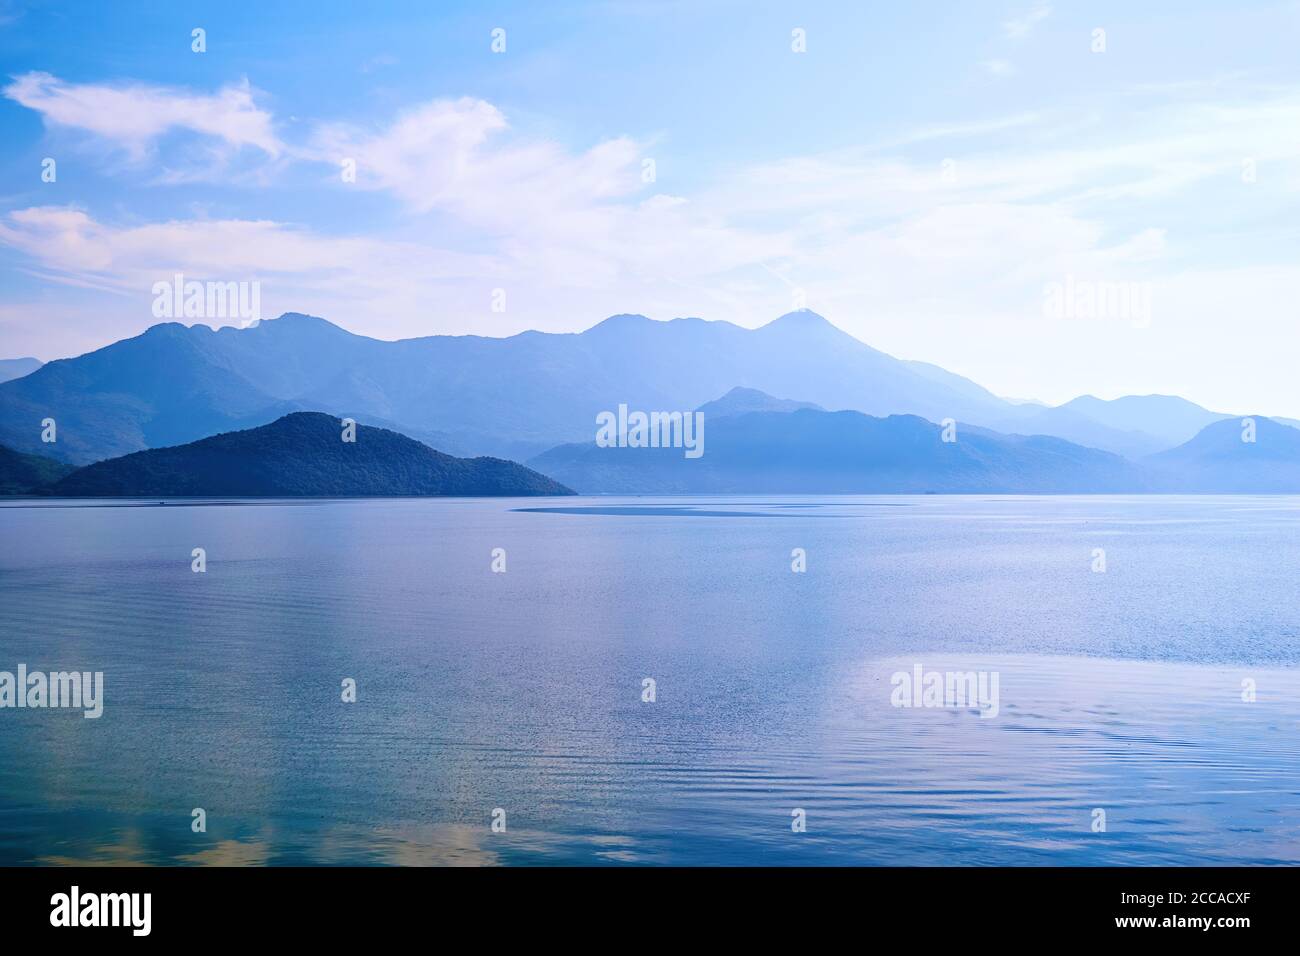 Crépuscule sur l'eau calme du lac et île avec des montagnes. Célèbre lac de Skadar au Monténégro. Texture d'arrière-plan de la nature Banque D'Images